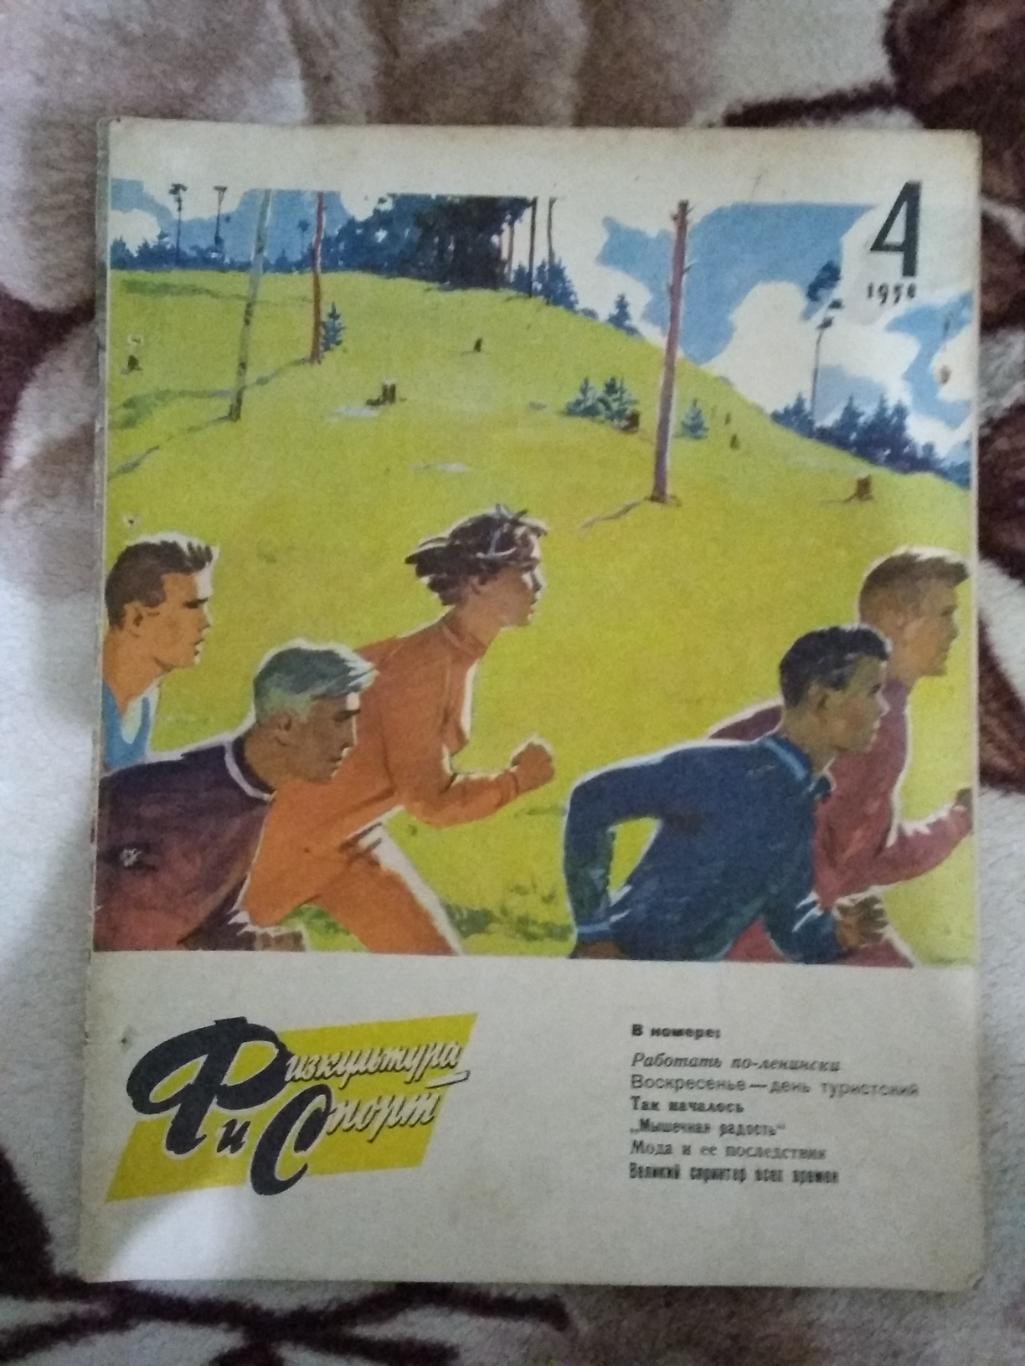 Журнал.Физкультура и спорт № 4 1958 г. (ФиС).